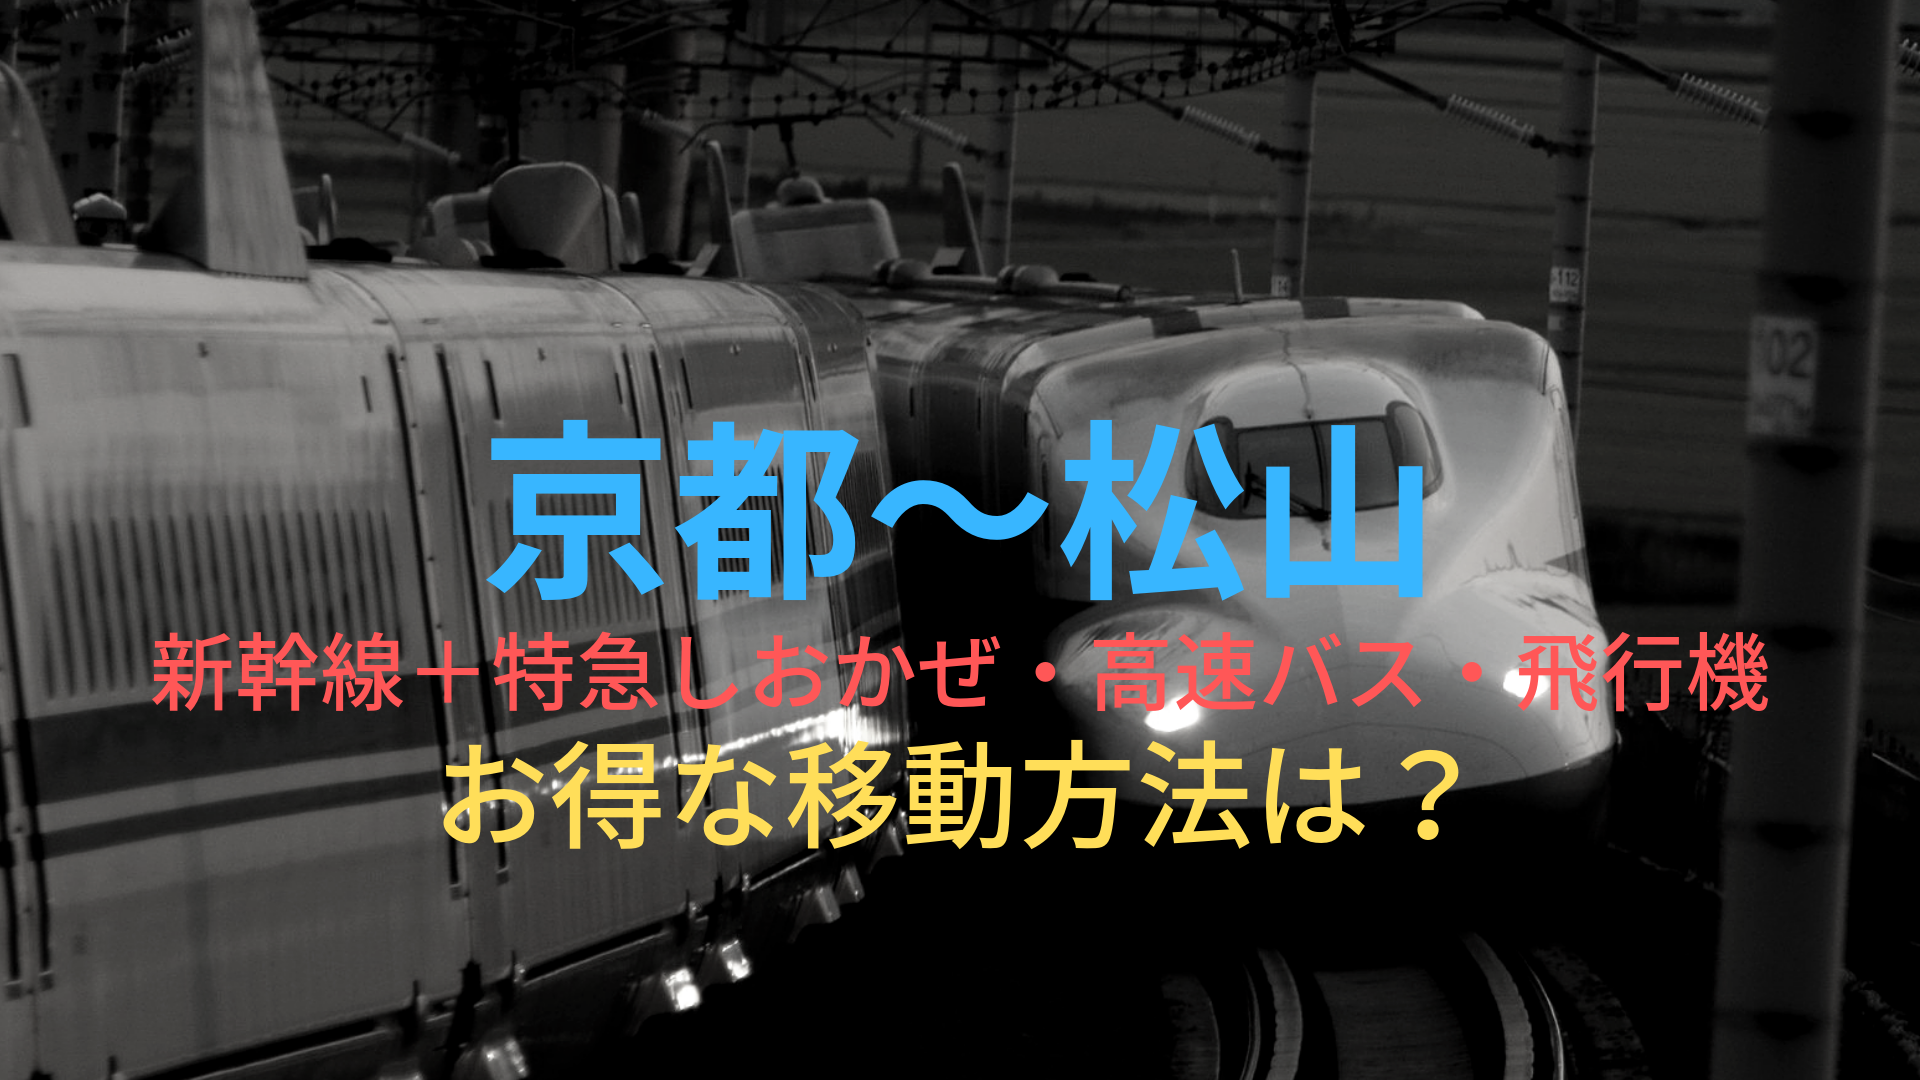 京都 松山 3760円 格安で移動する方法は 新幹線 特急しおかぜ 高速バス 飛行機をそれぞれ比較 ばしたく交通